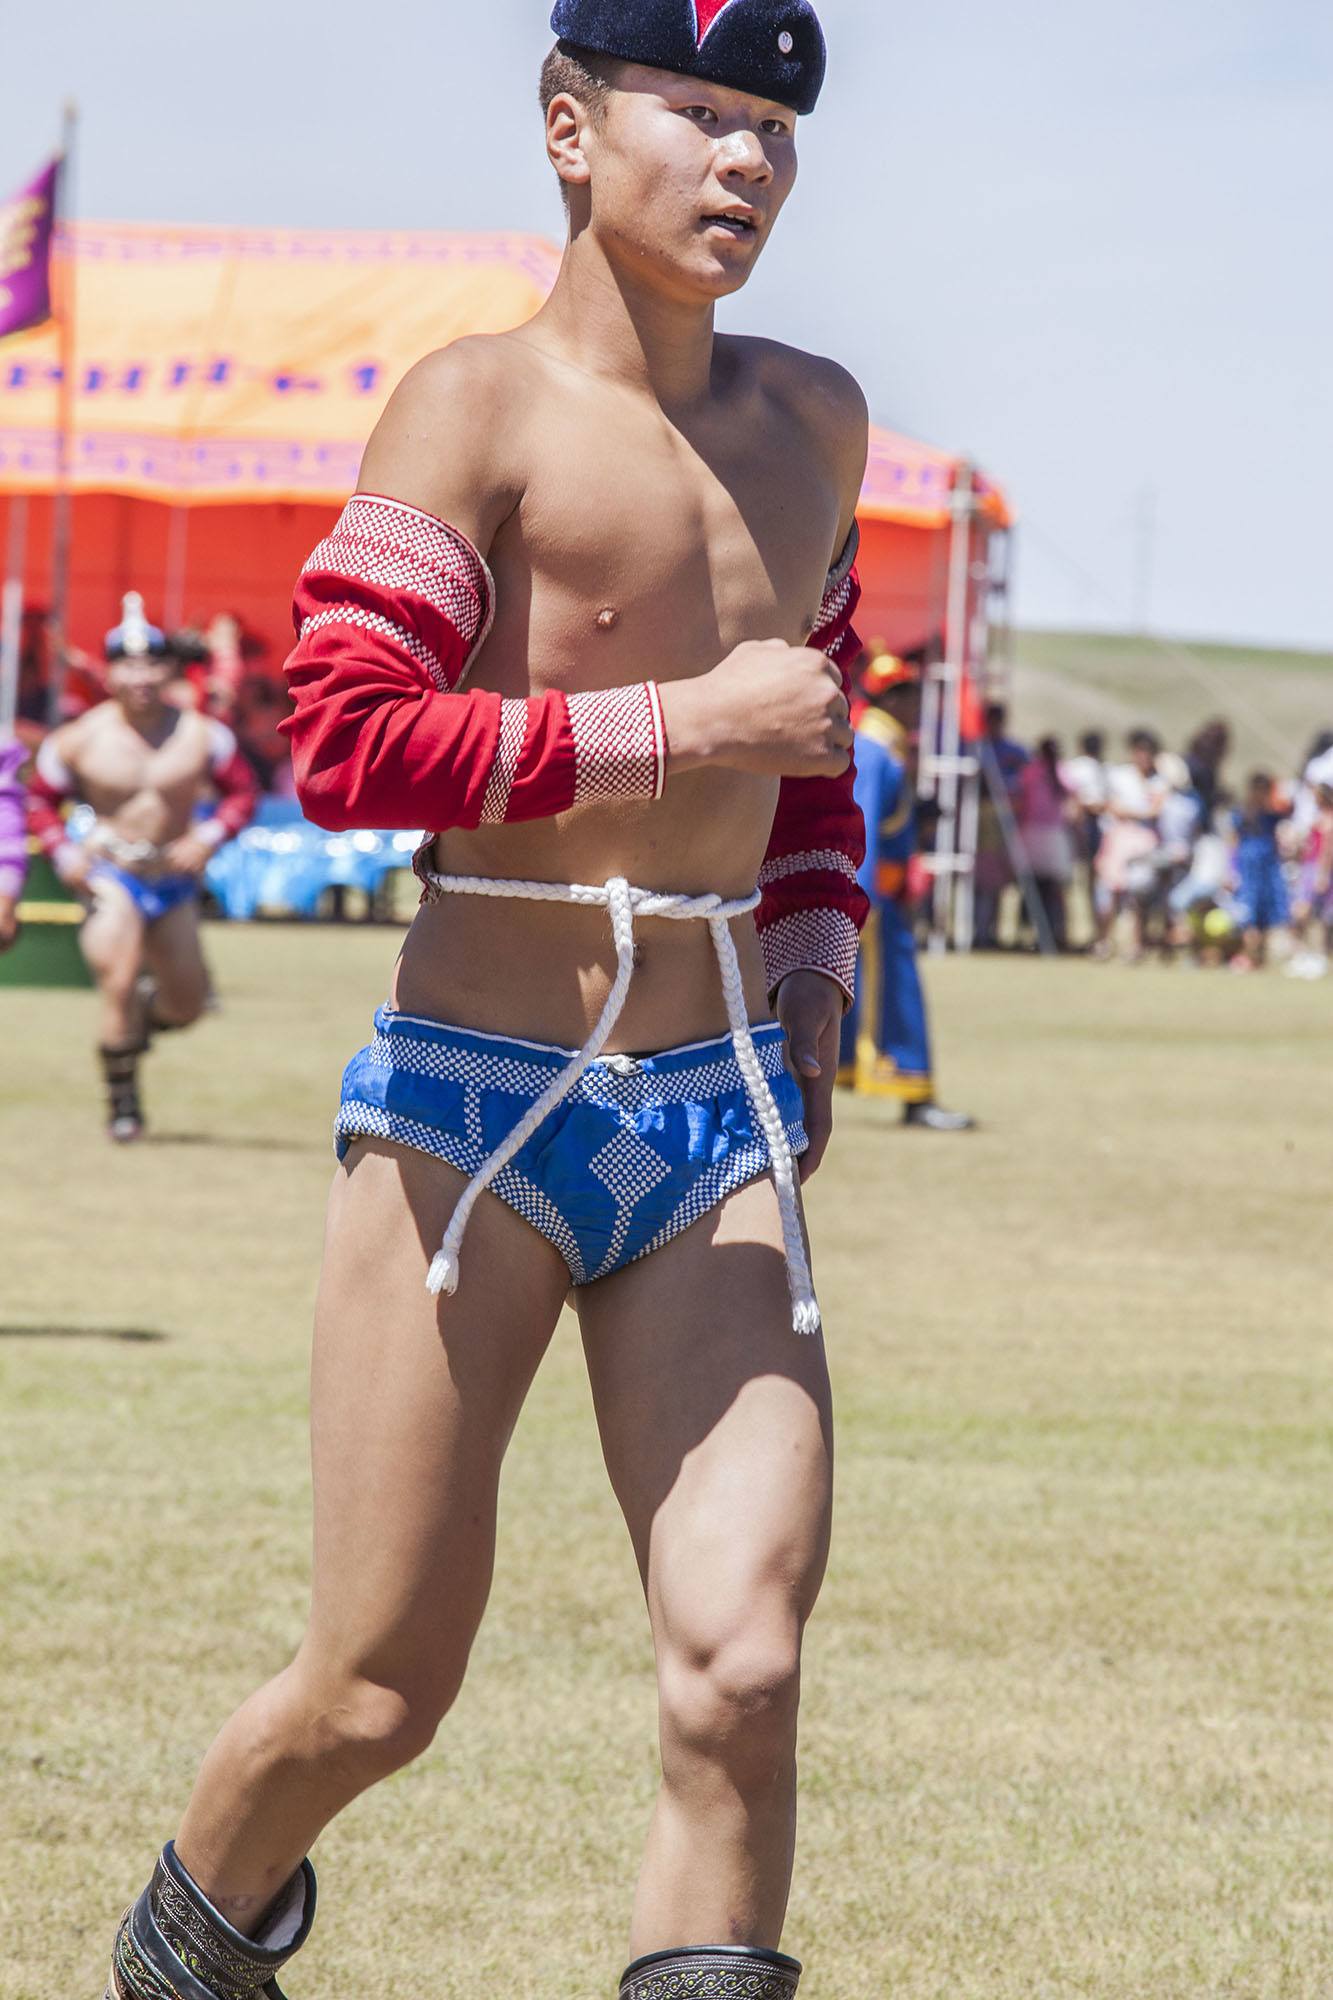 Mongolian wrestler running on field